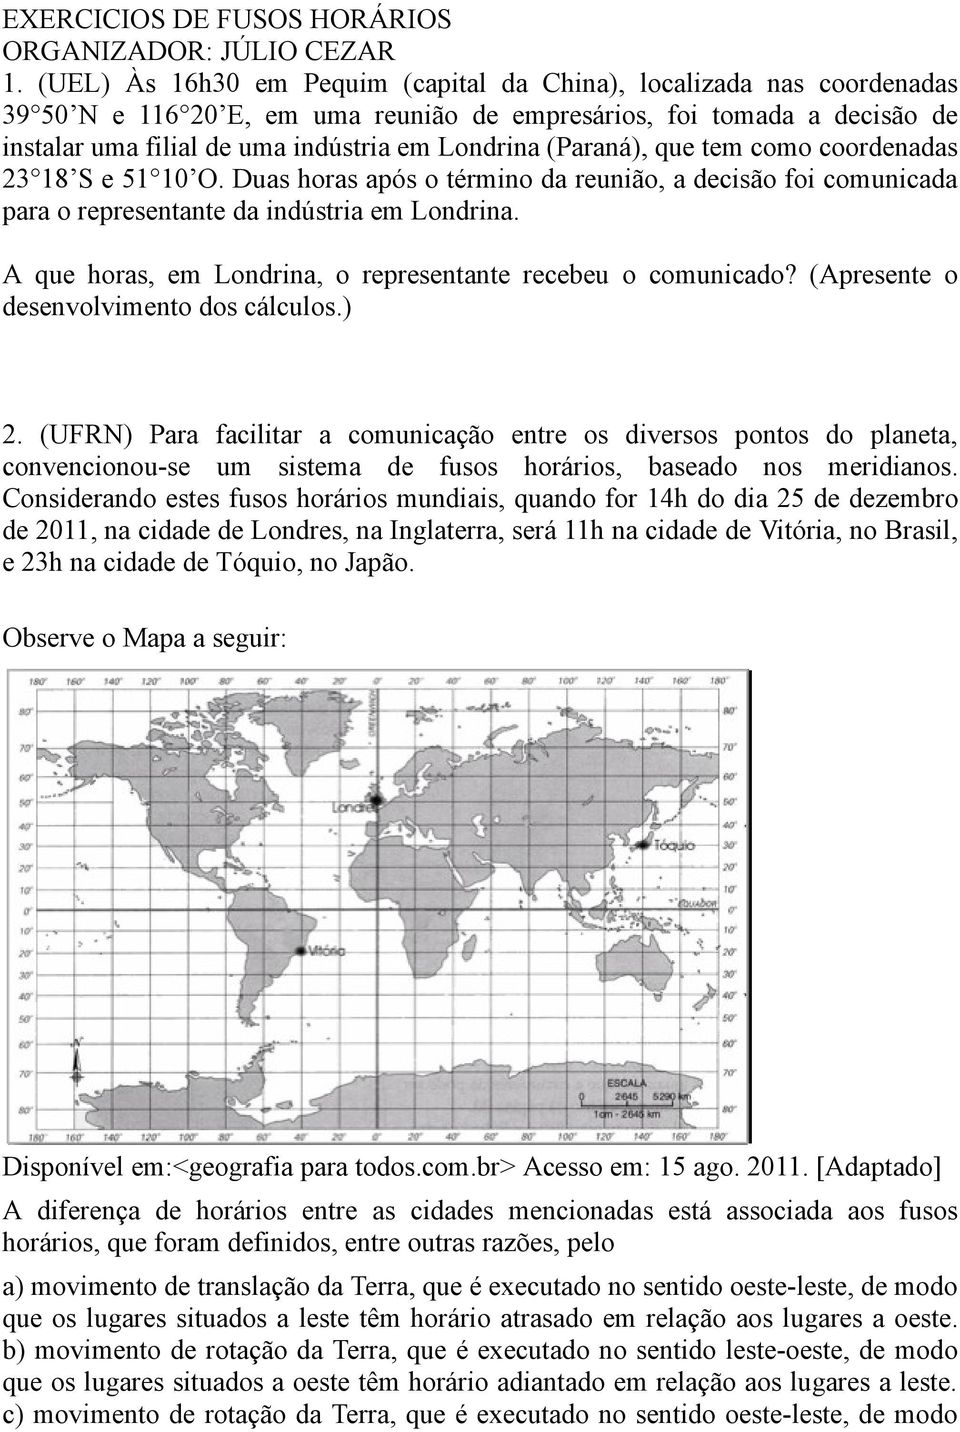 (Paraná), que tem como coordenadas 23 18 S e 51 10 O. Duas horas após o término da reunião, a decisão foi comunicada para o representante da indústria em Londrina.